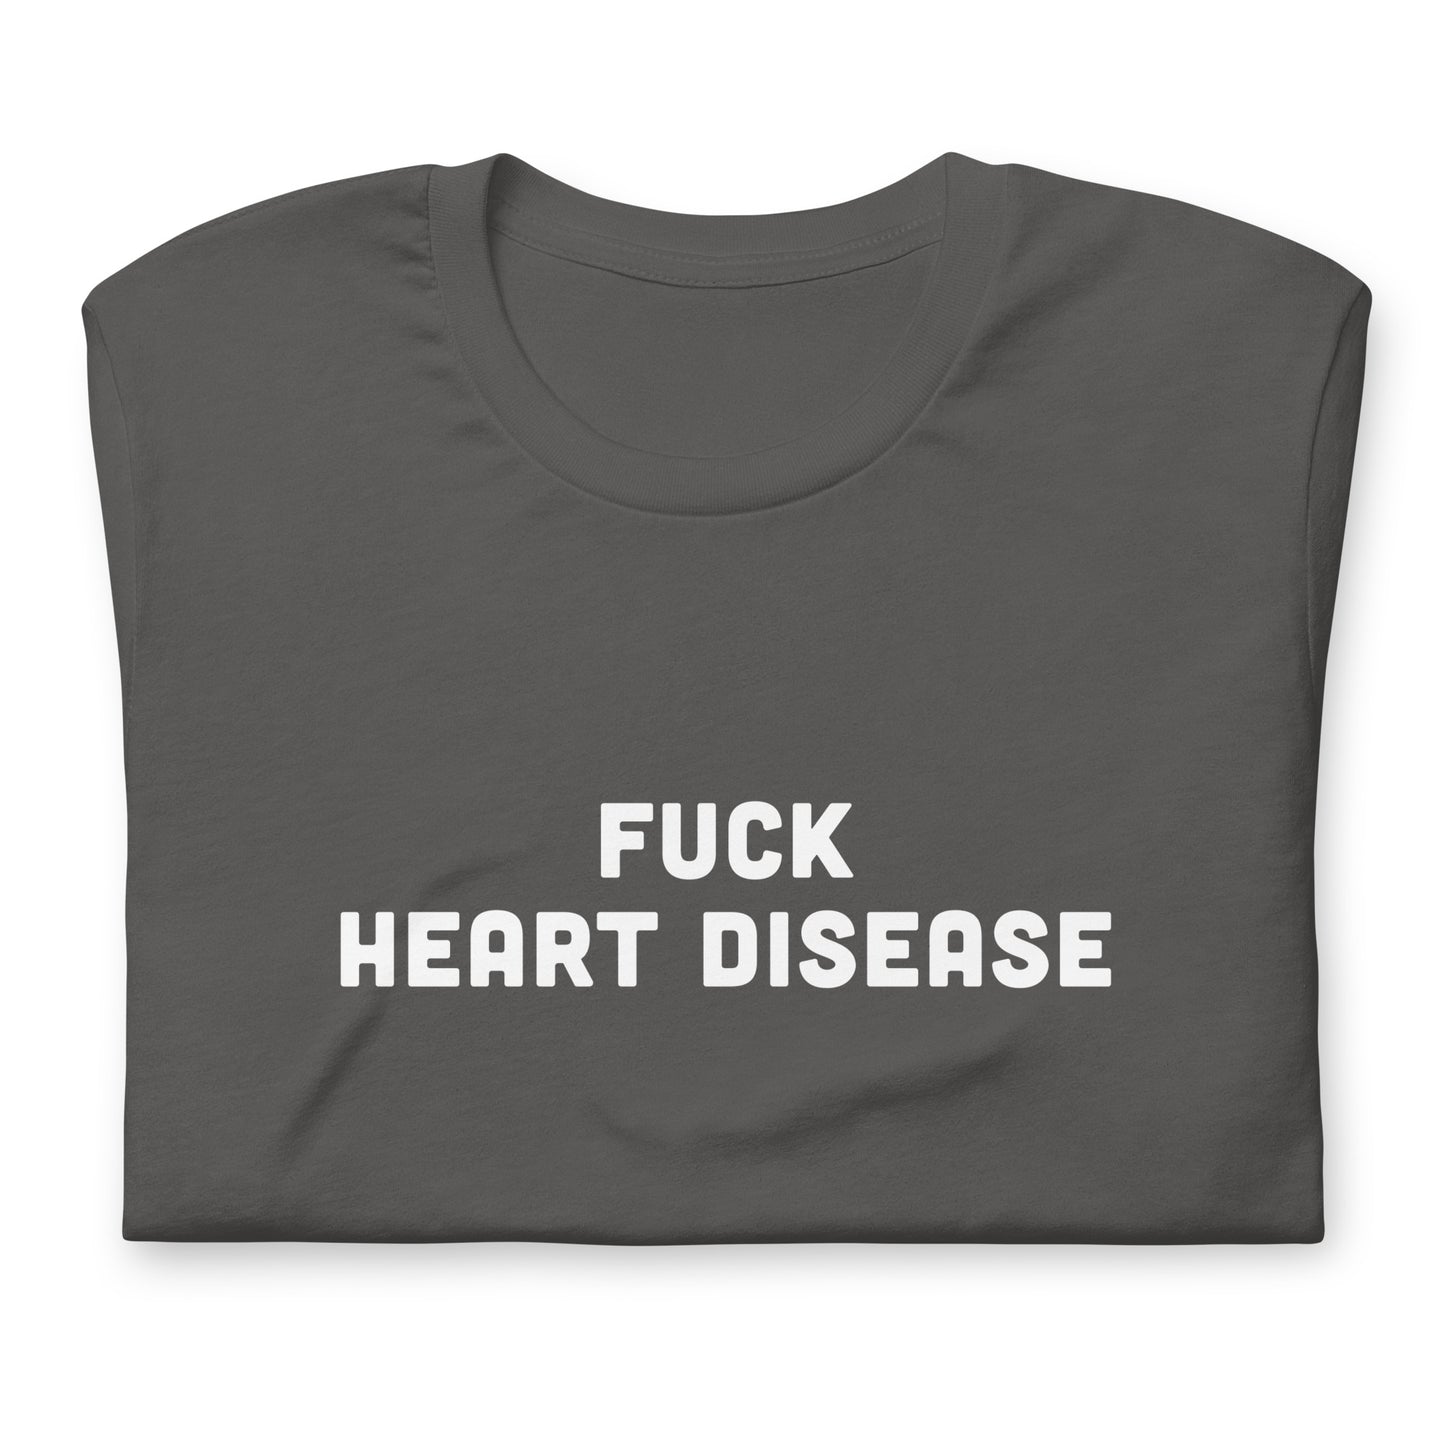 Fuck Heart Disease T-Shirt Size 2XL Color Black